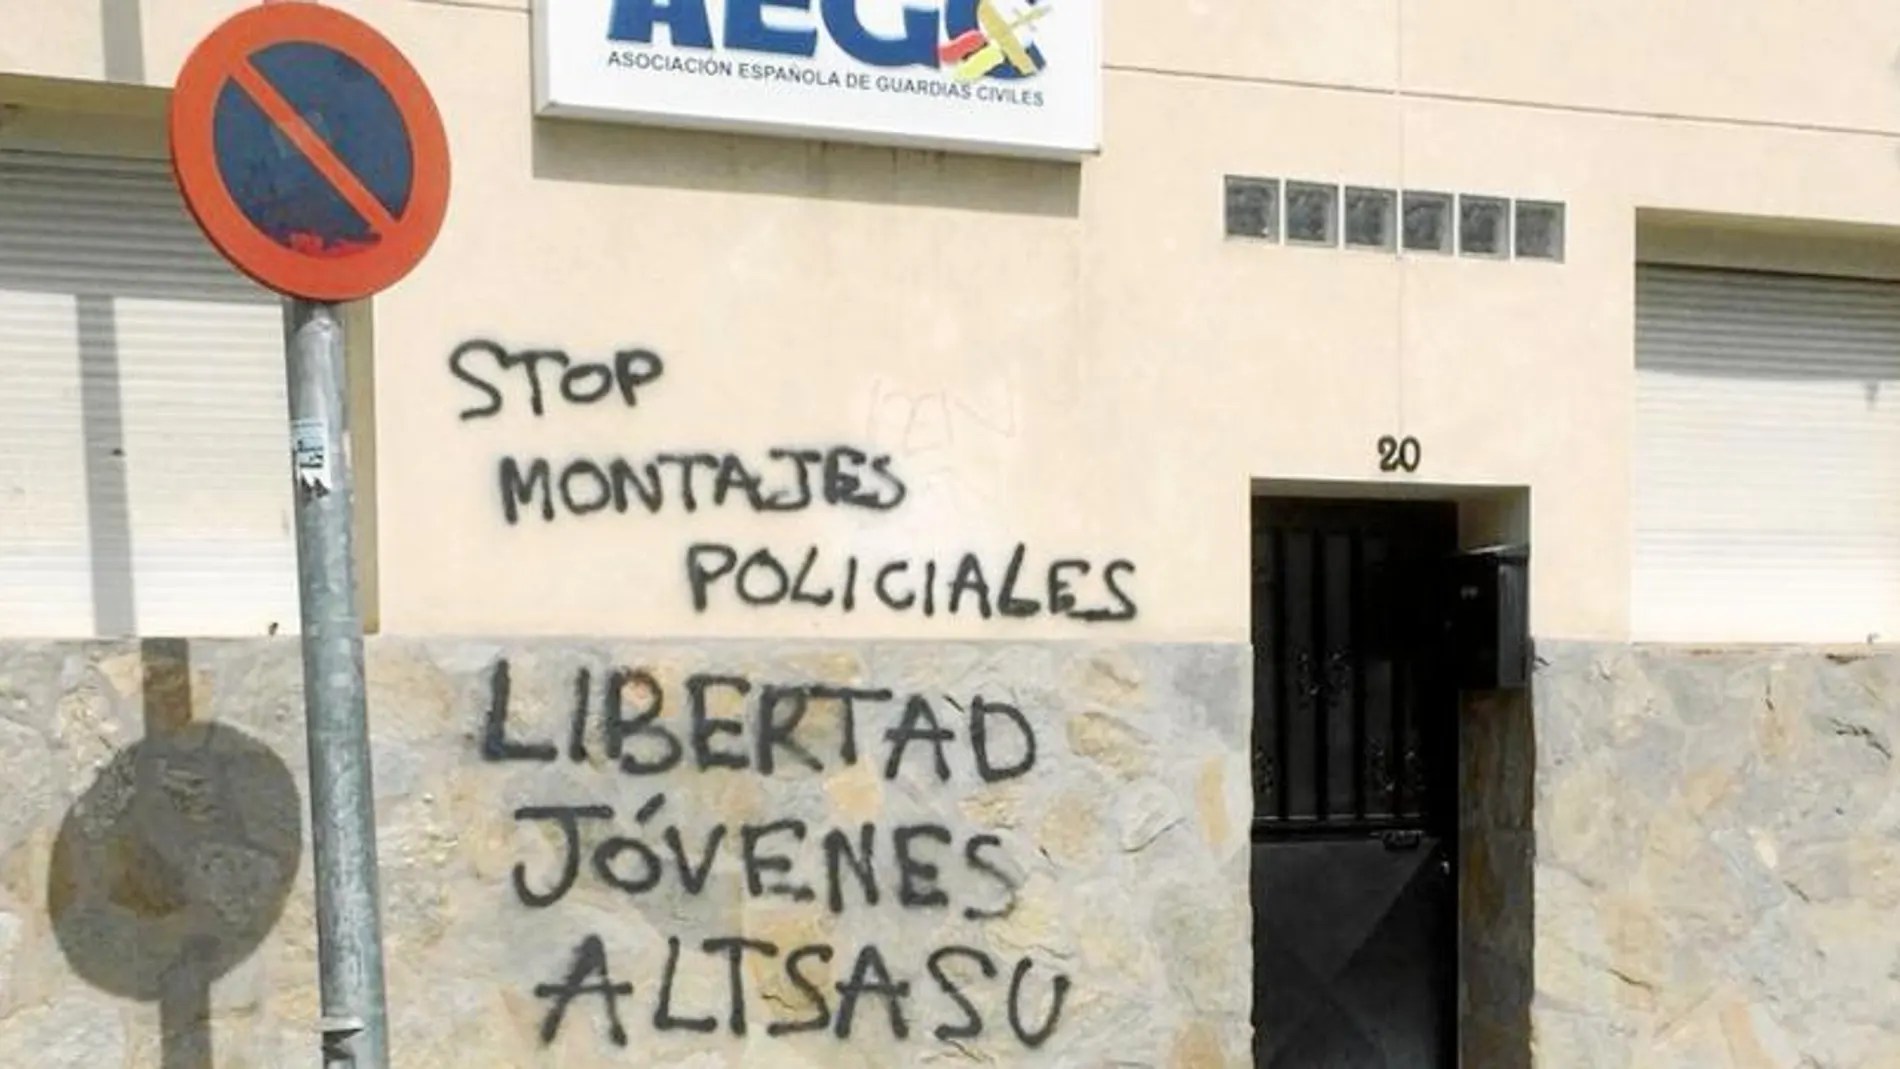 La sede de la Asociación Española de Guardias Civiles situada en Valdemoro (Madrid) amaneció ayer con pintadas exigiendo la libertad de los agresores de Alsasua